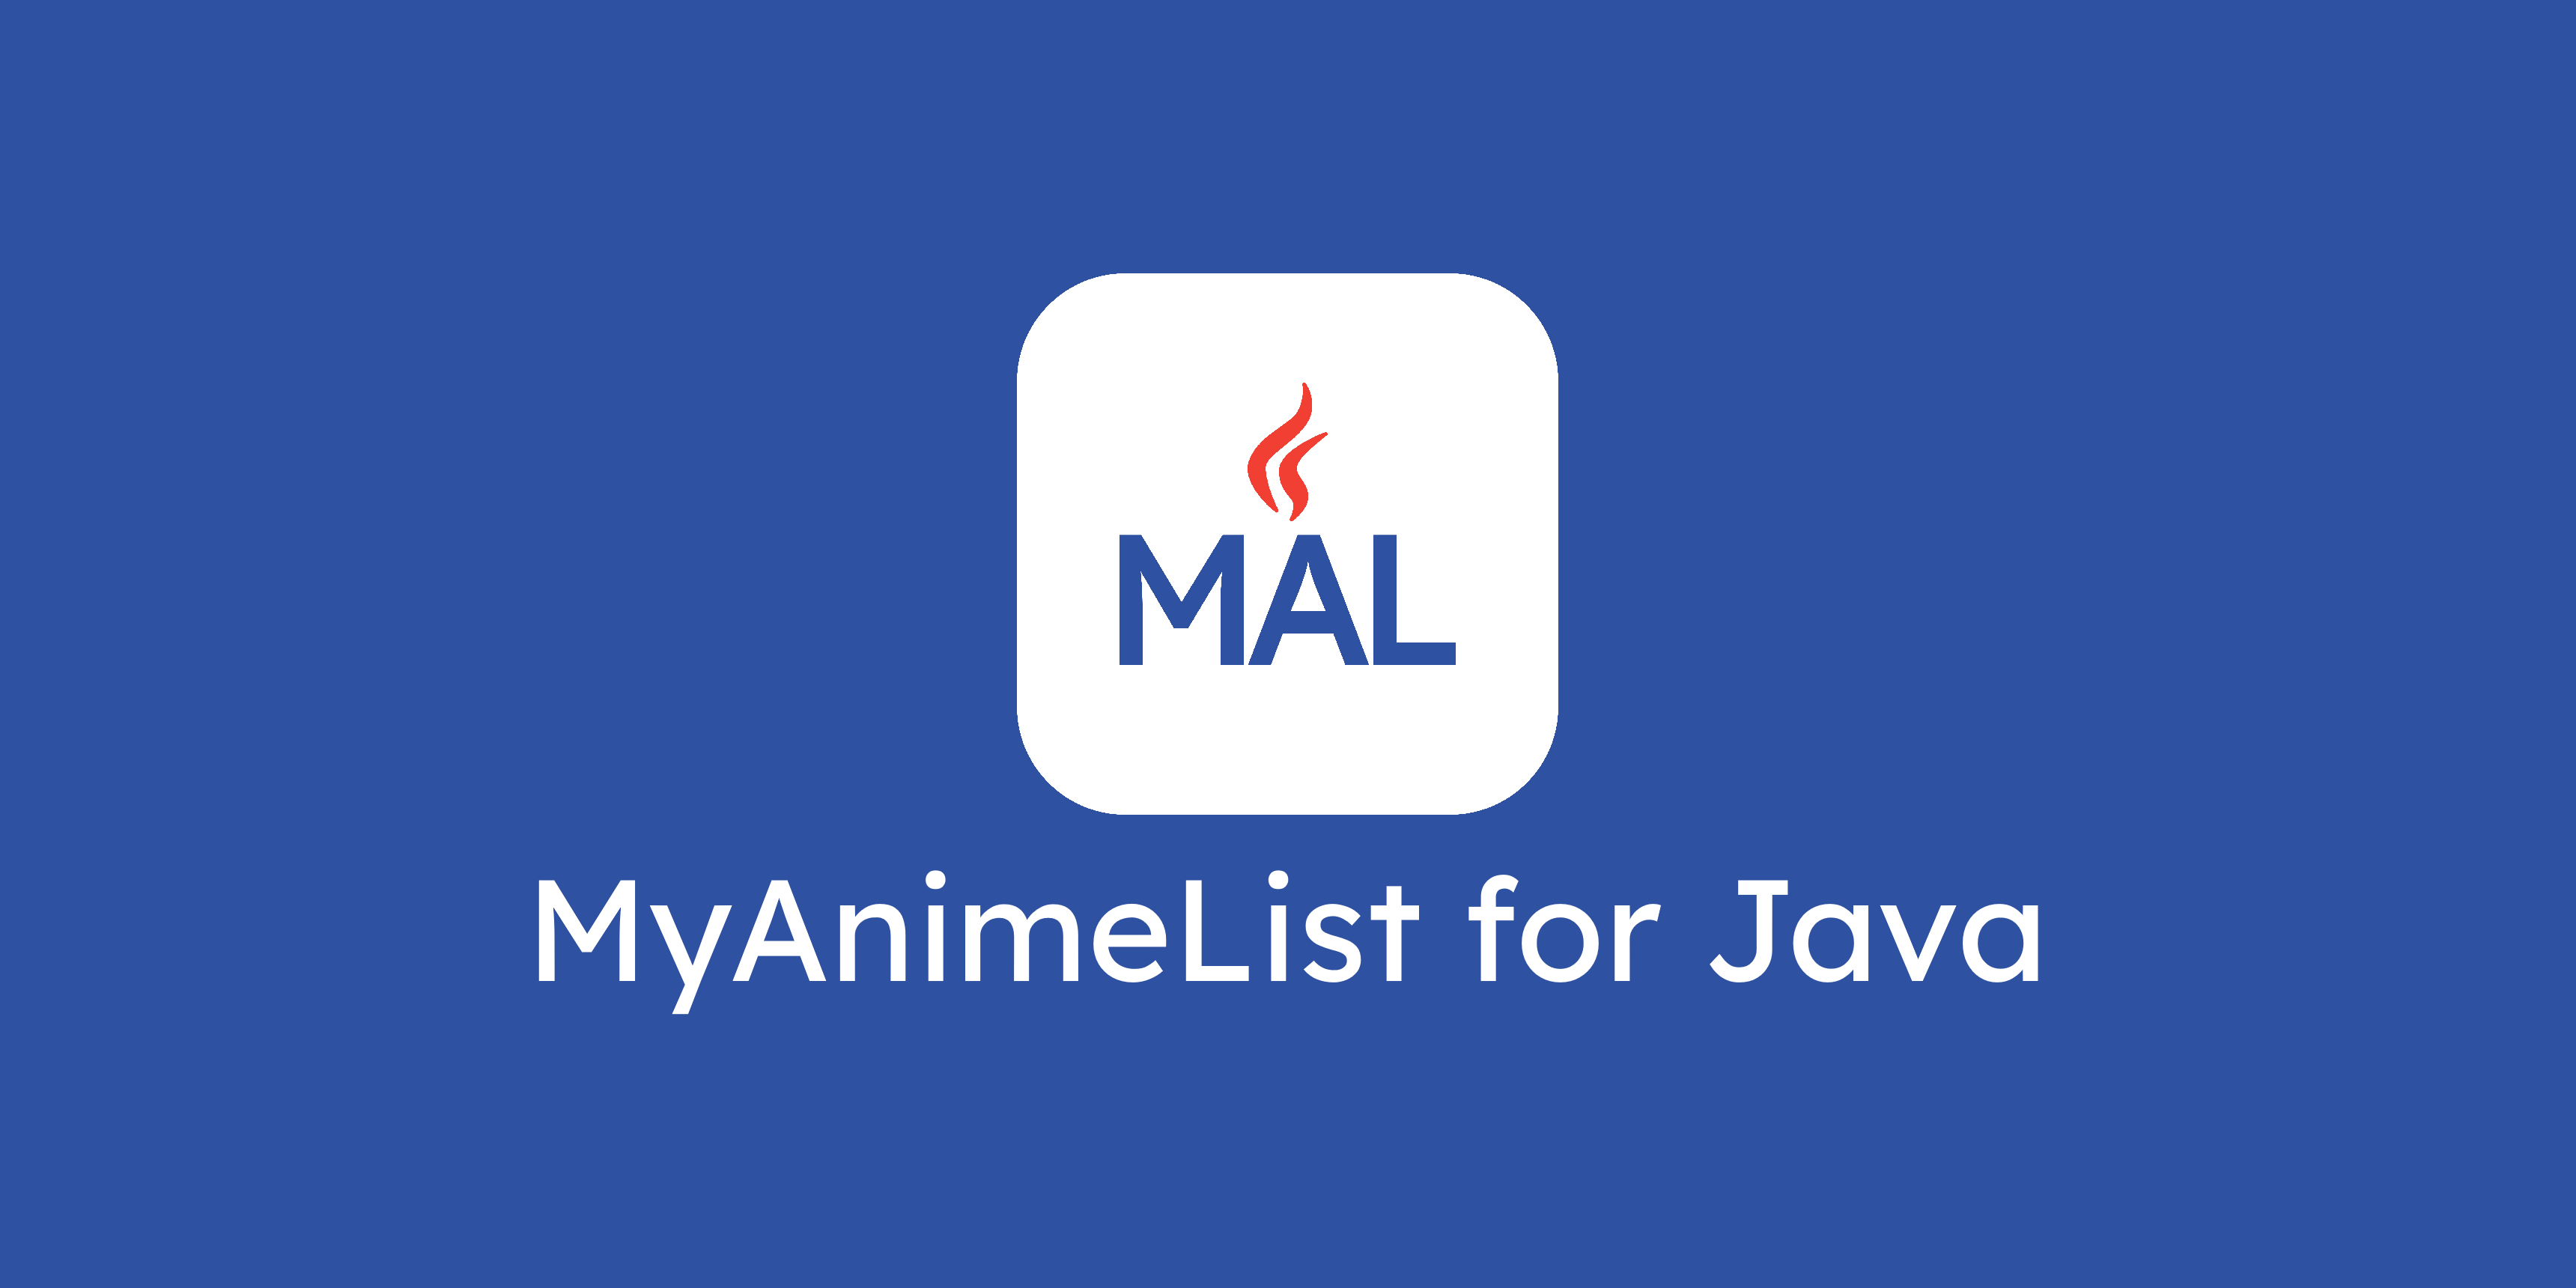 Mal4J - MyAnimeList for Java